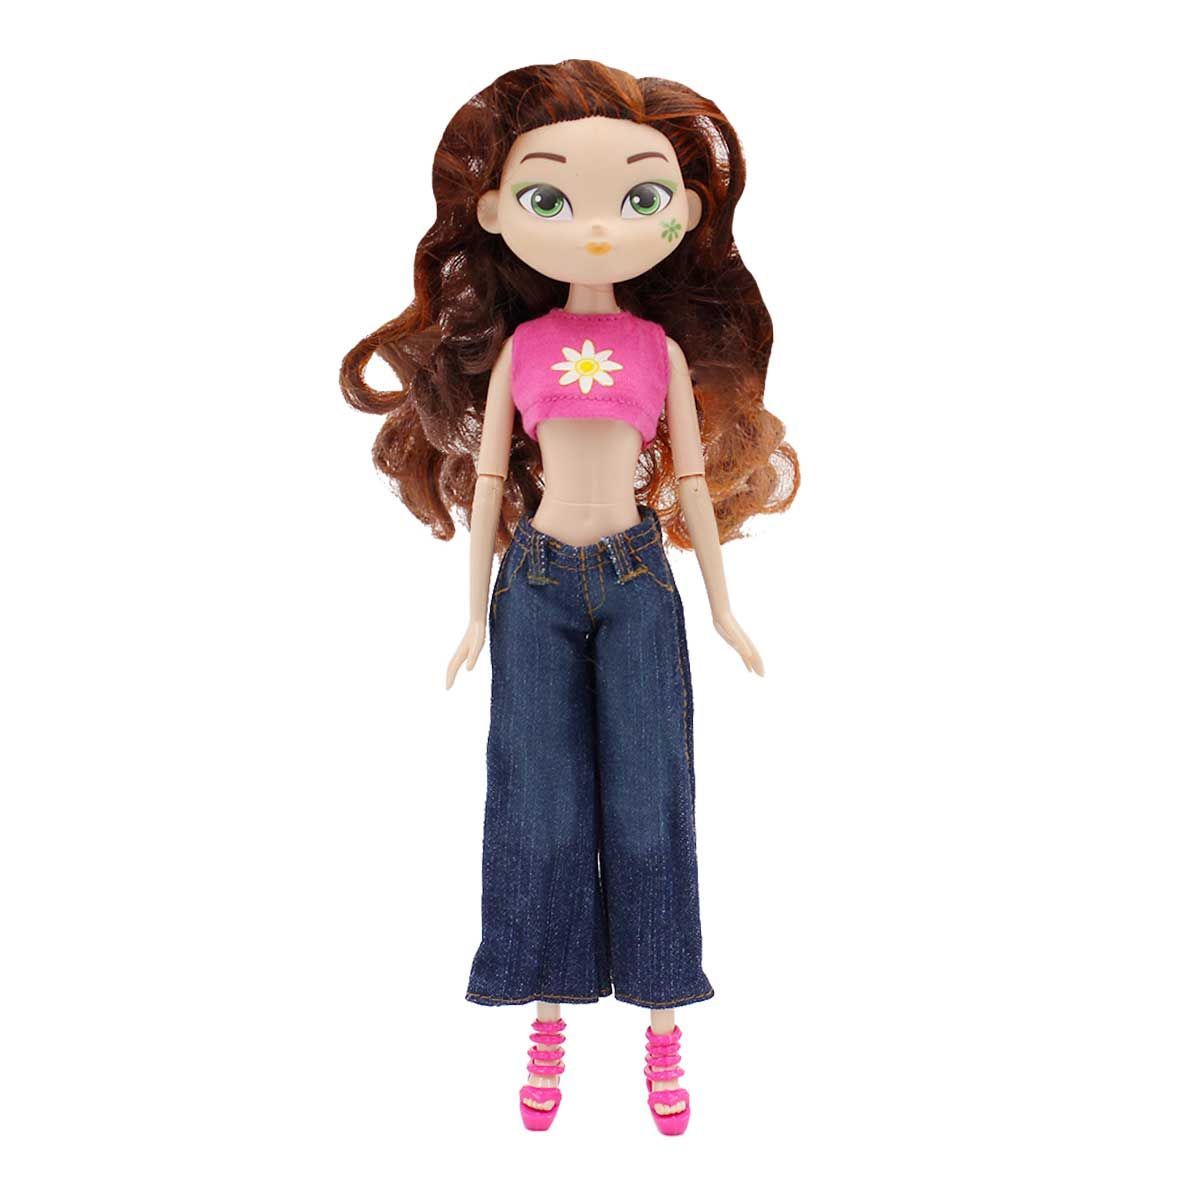 Одежда Dolls Accessories для Дисней hasboro и кукол 26 28 см Цветочек